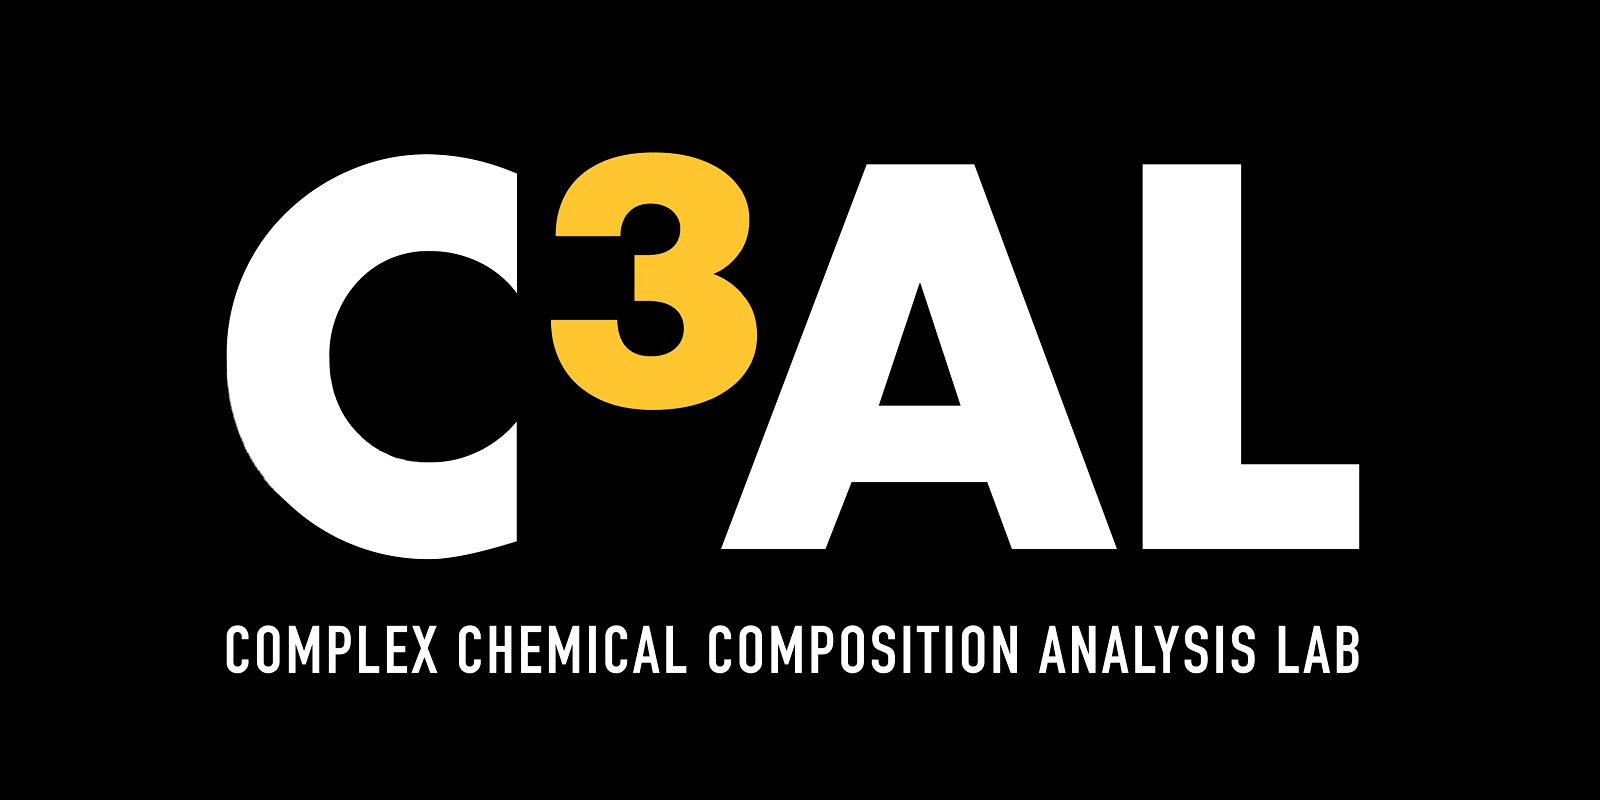 Complex Chemical Composition Analysis Lab (C³AL)